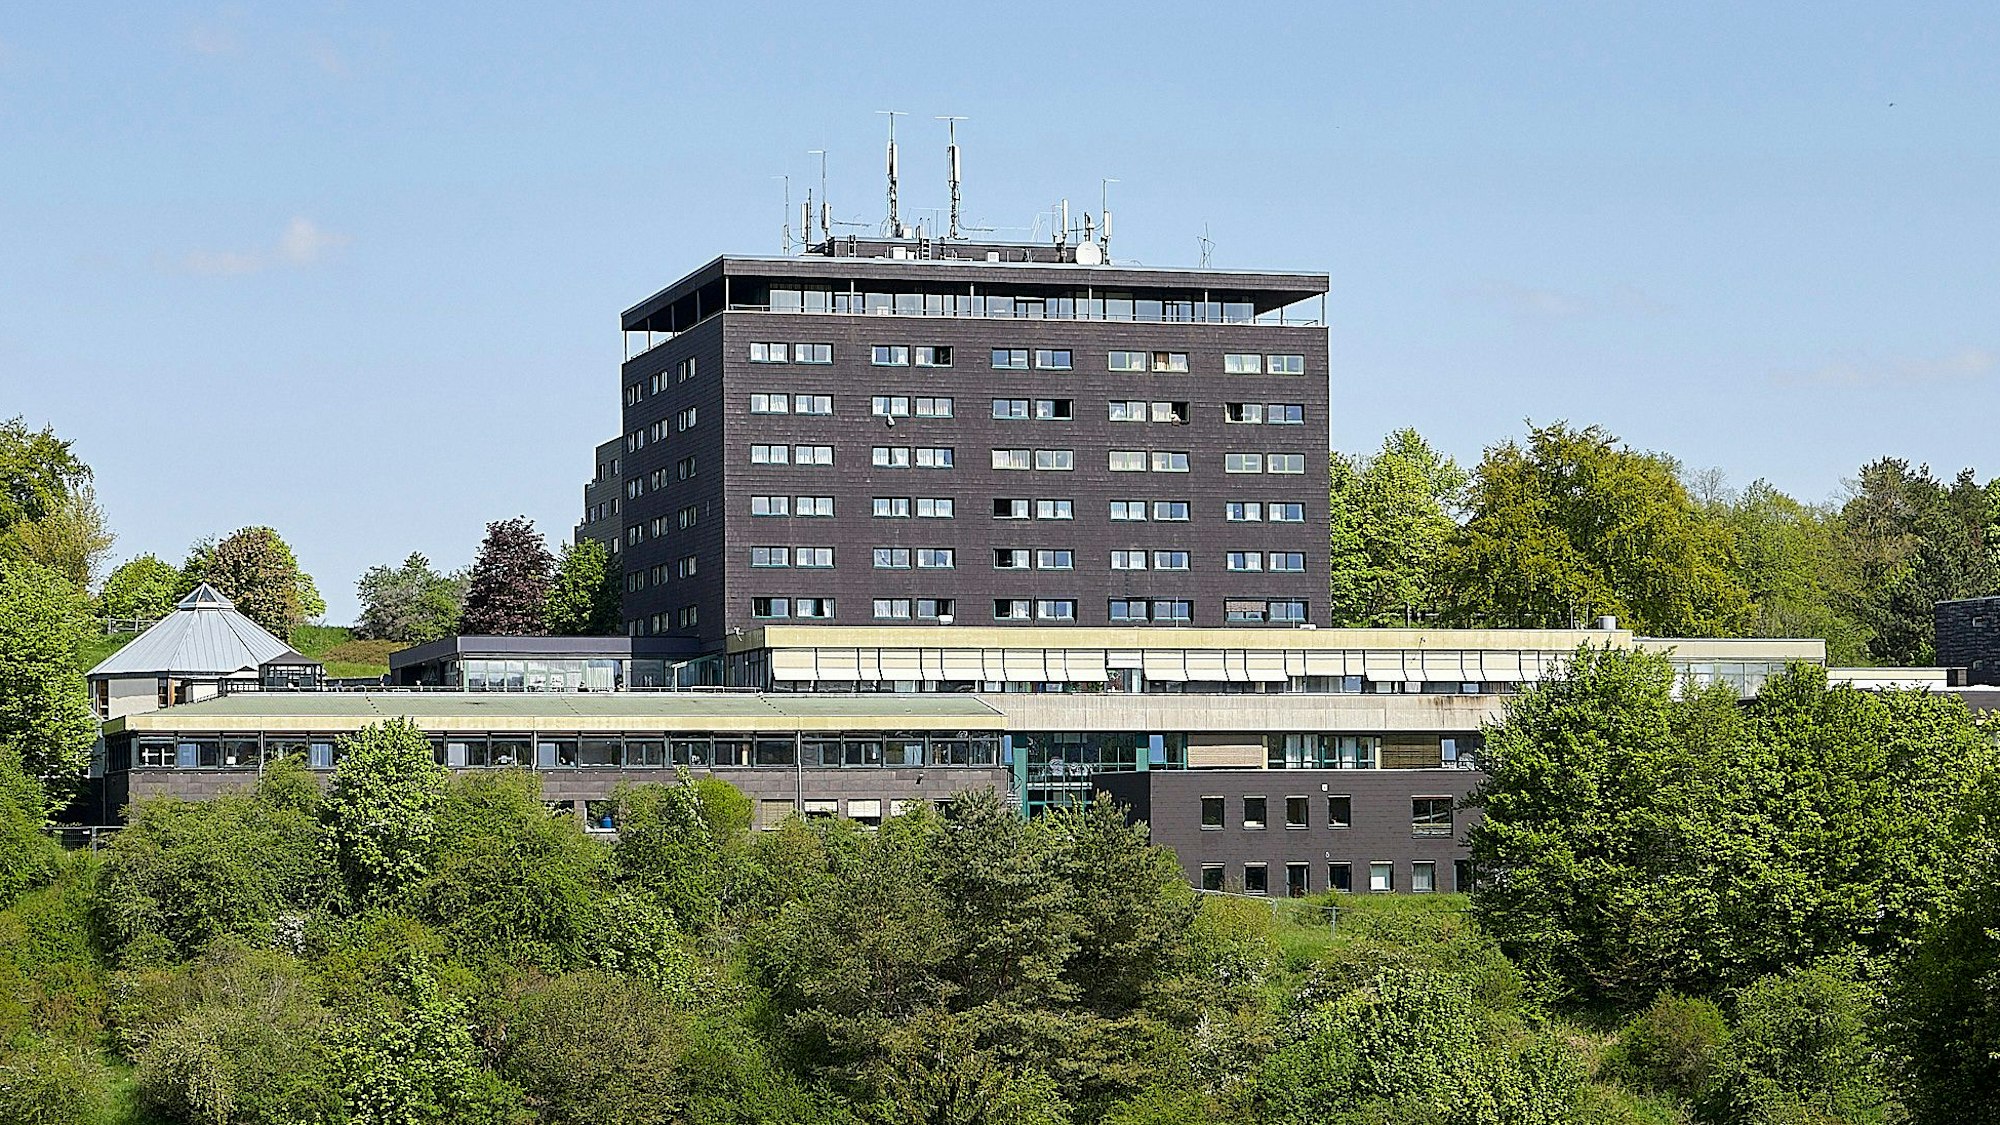 Umgeben von grünen Bäumen und Sträuchern ist der mehrstöckige Gebäudekomplex der ehemaligen Eifelhöhen-Klinik.